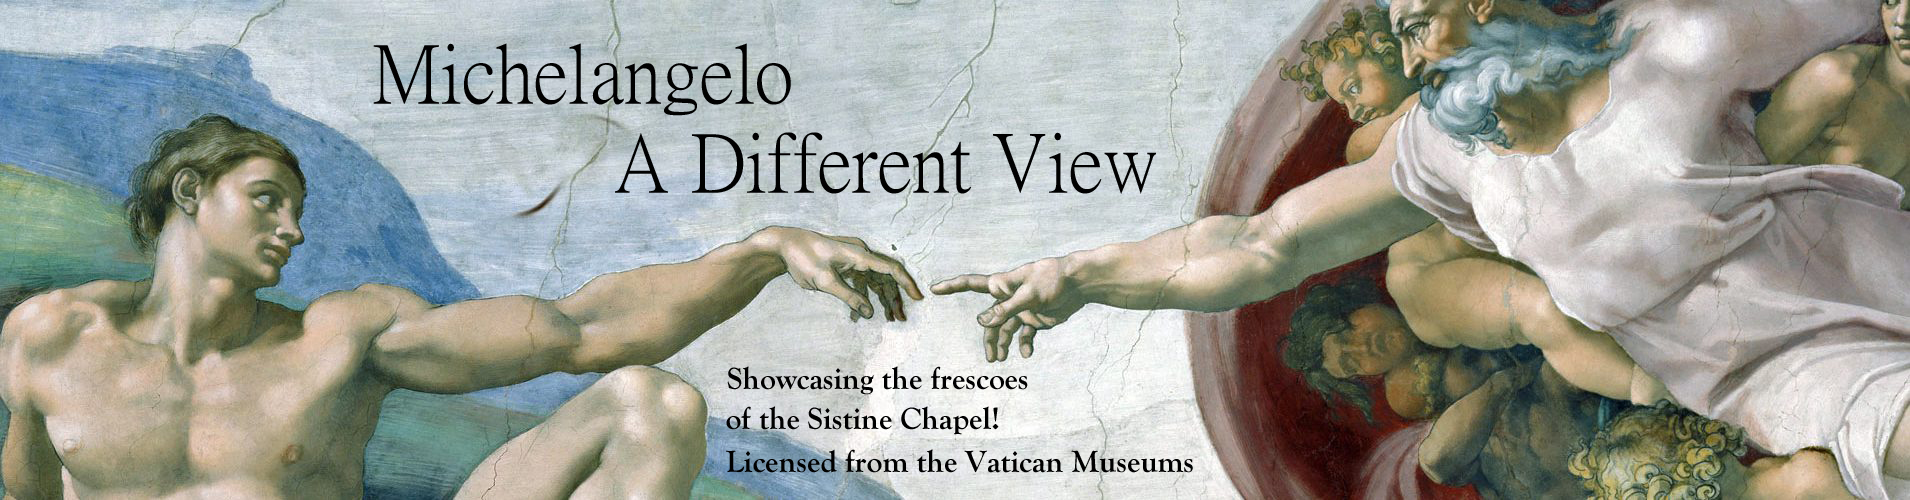 Michelangelo-Exhibit-Slider.jpg